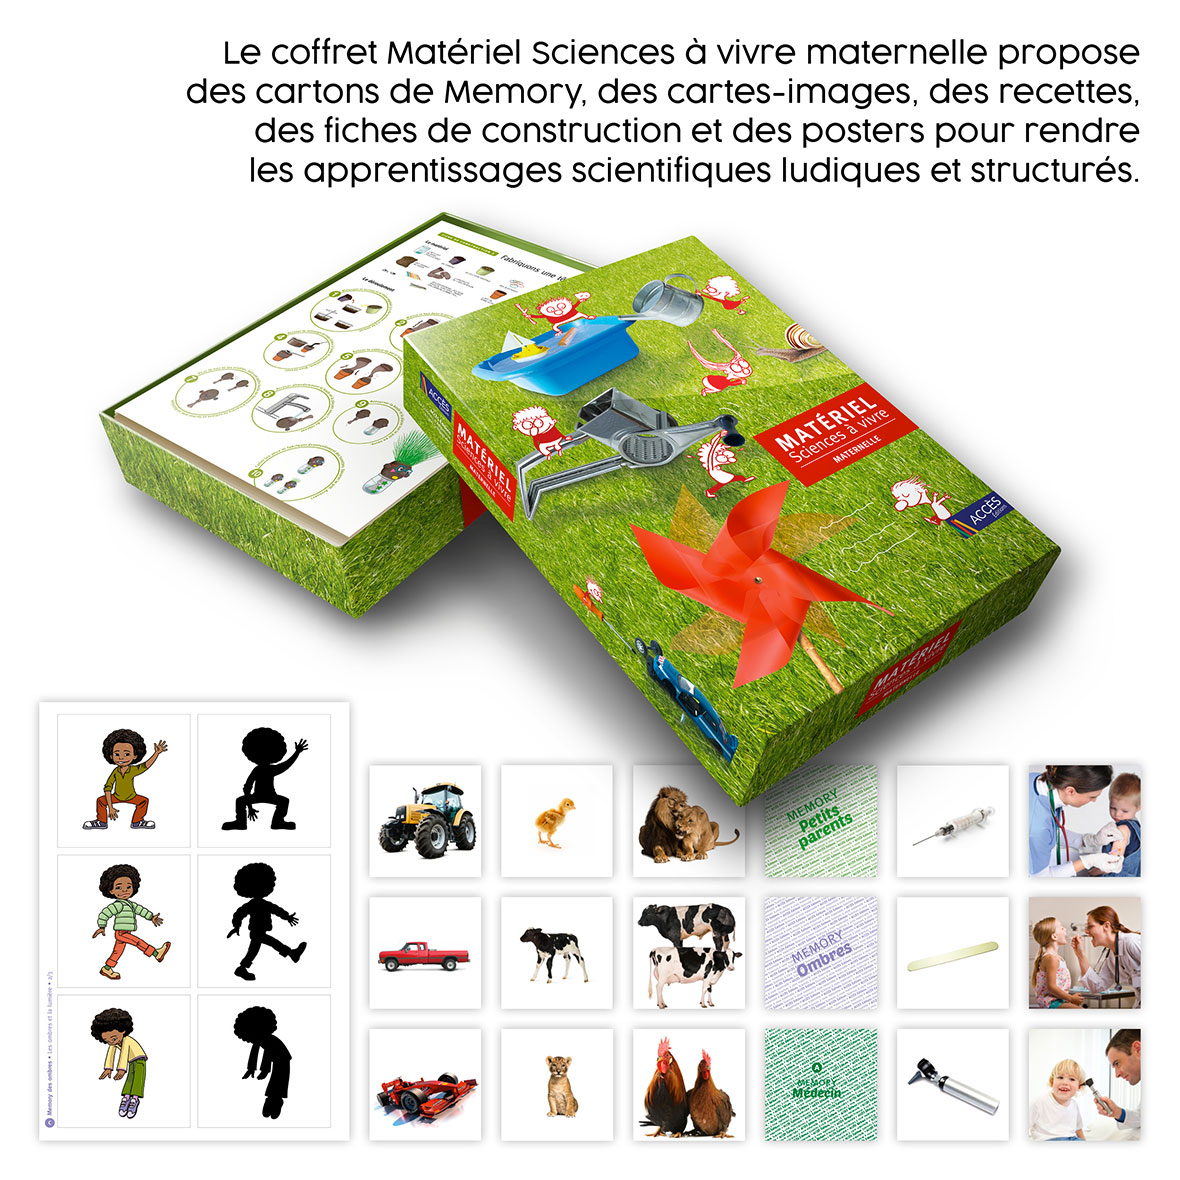 Materiel sciences a vivre maternelle miniature 2 acces editions